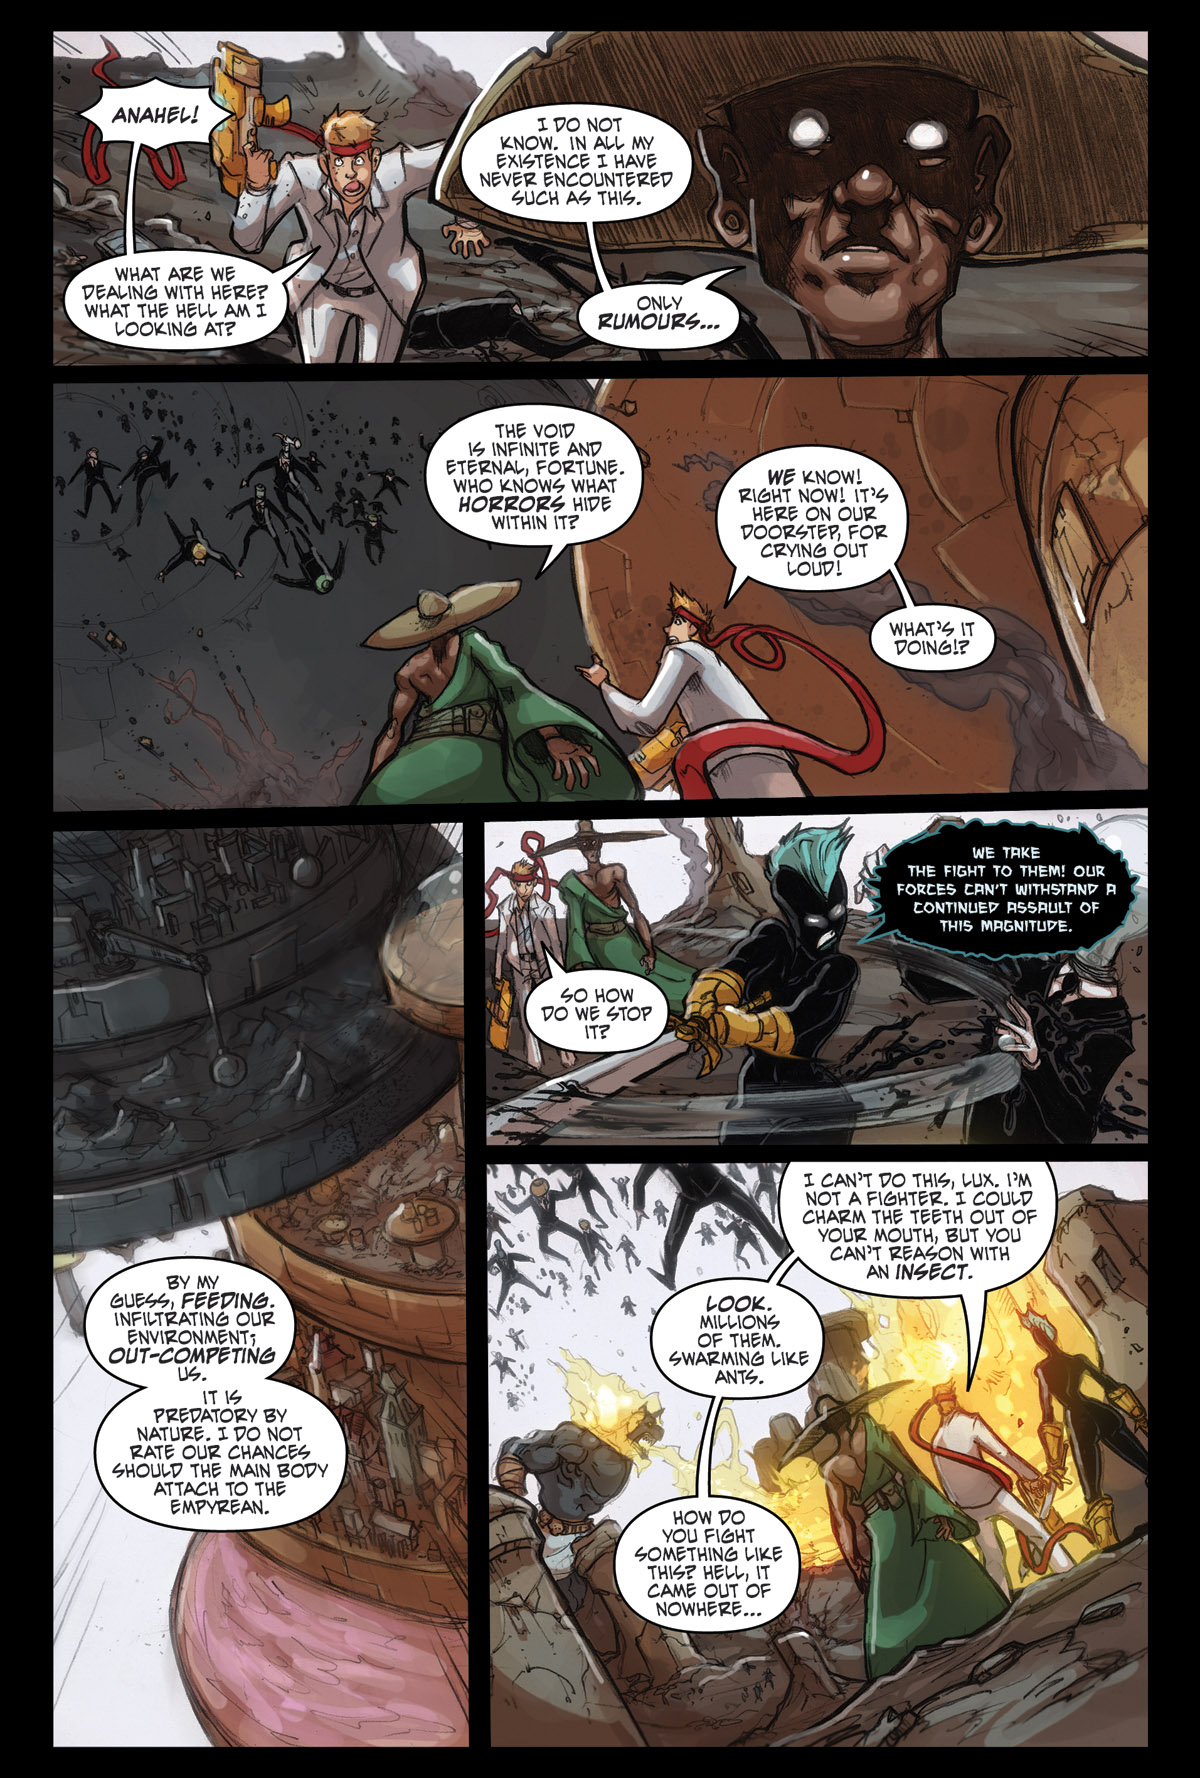 Afterlife Inc. | Wonderland | Page 7